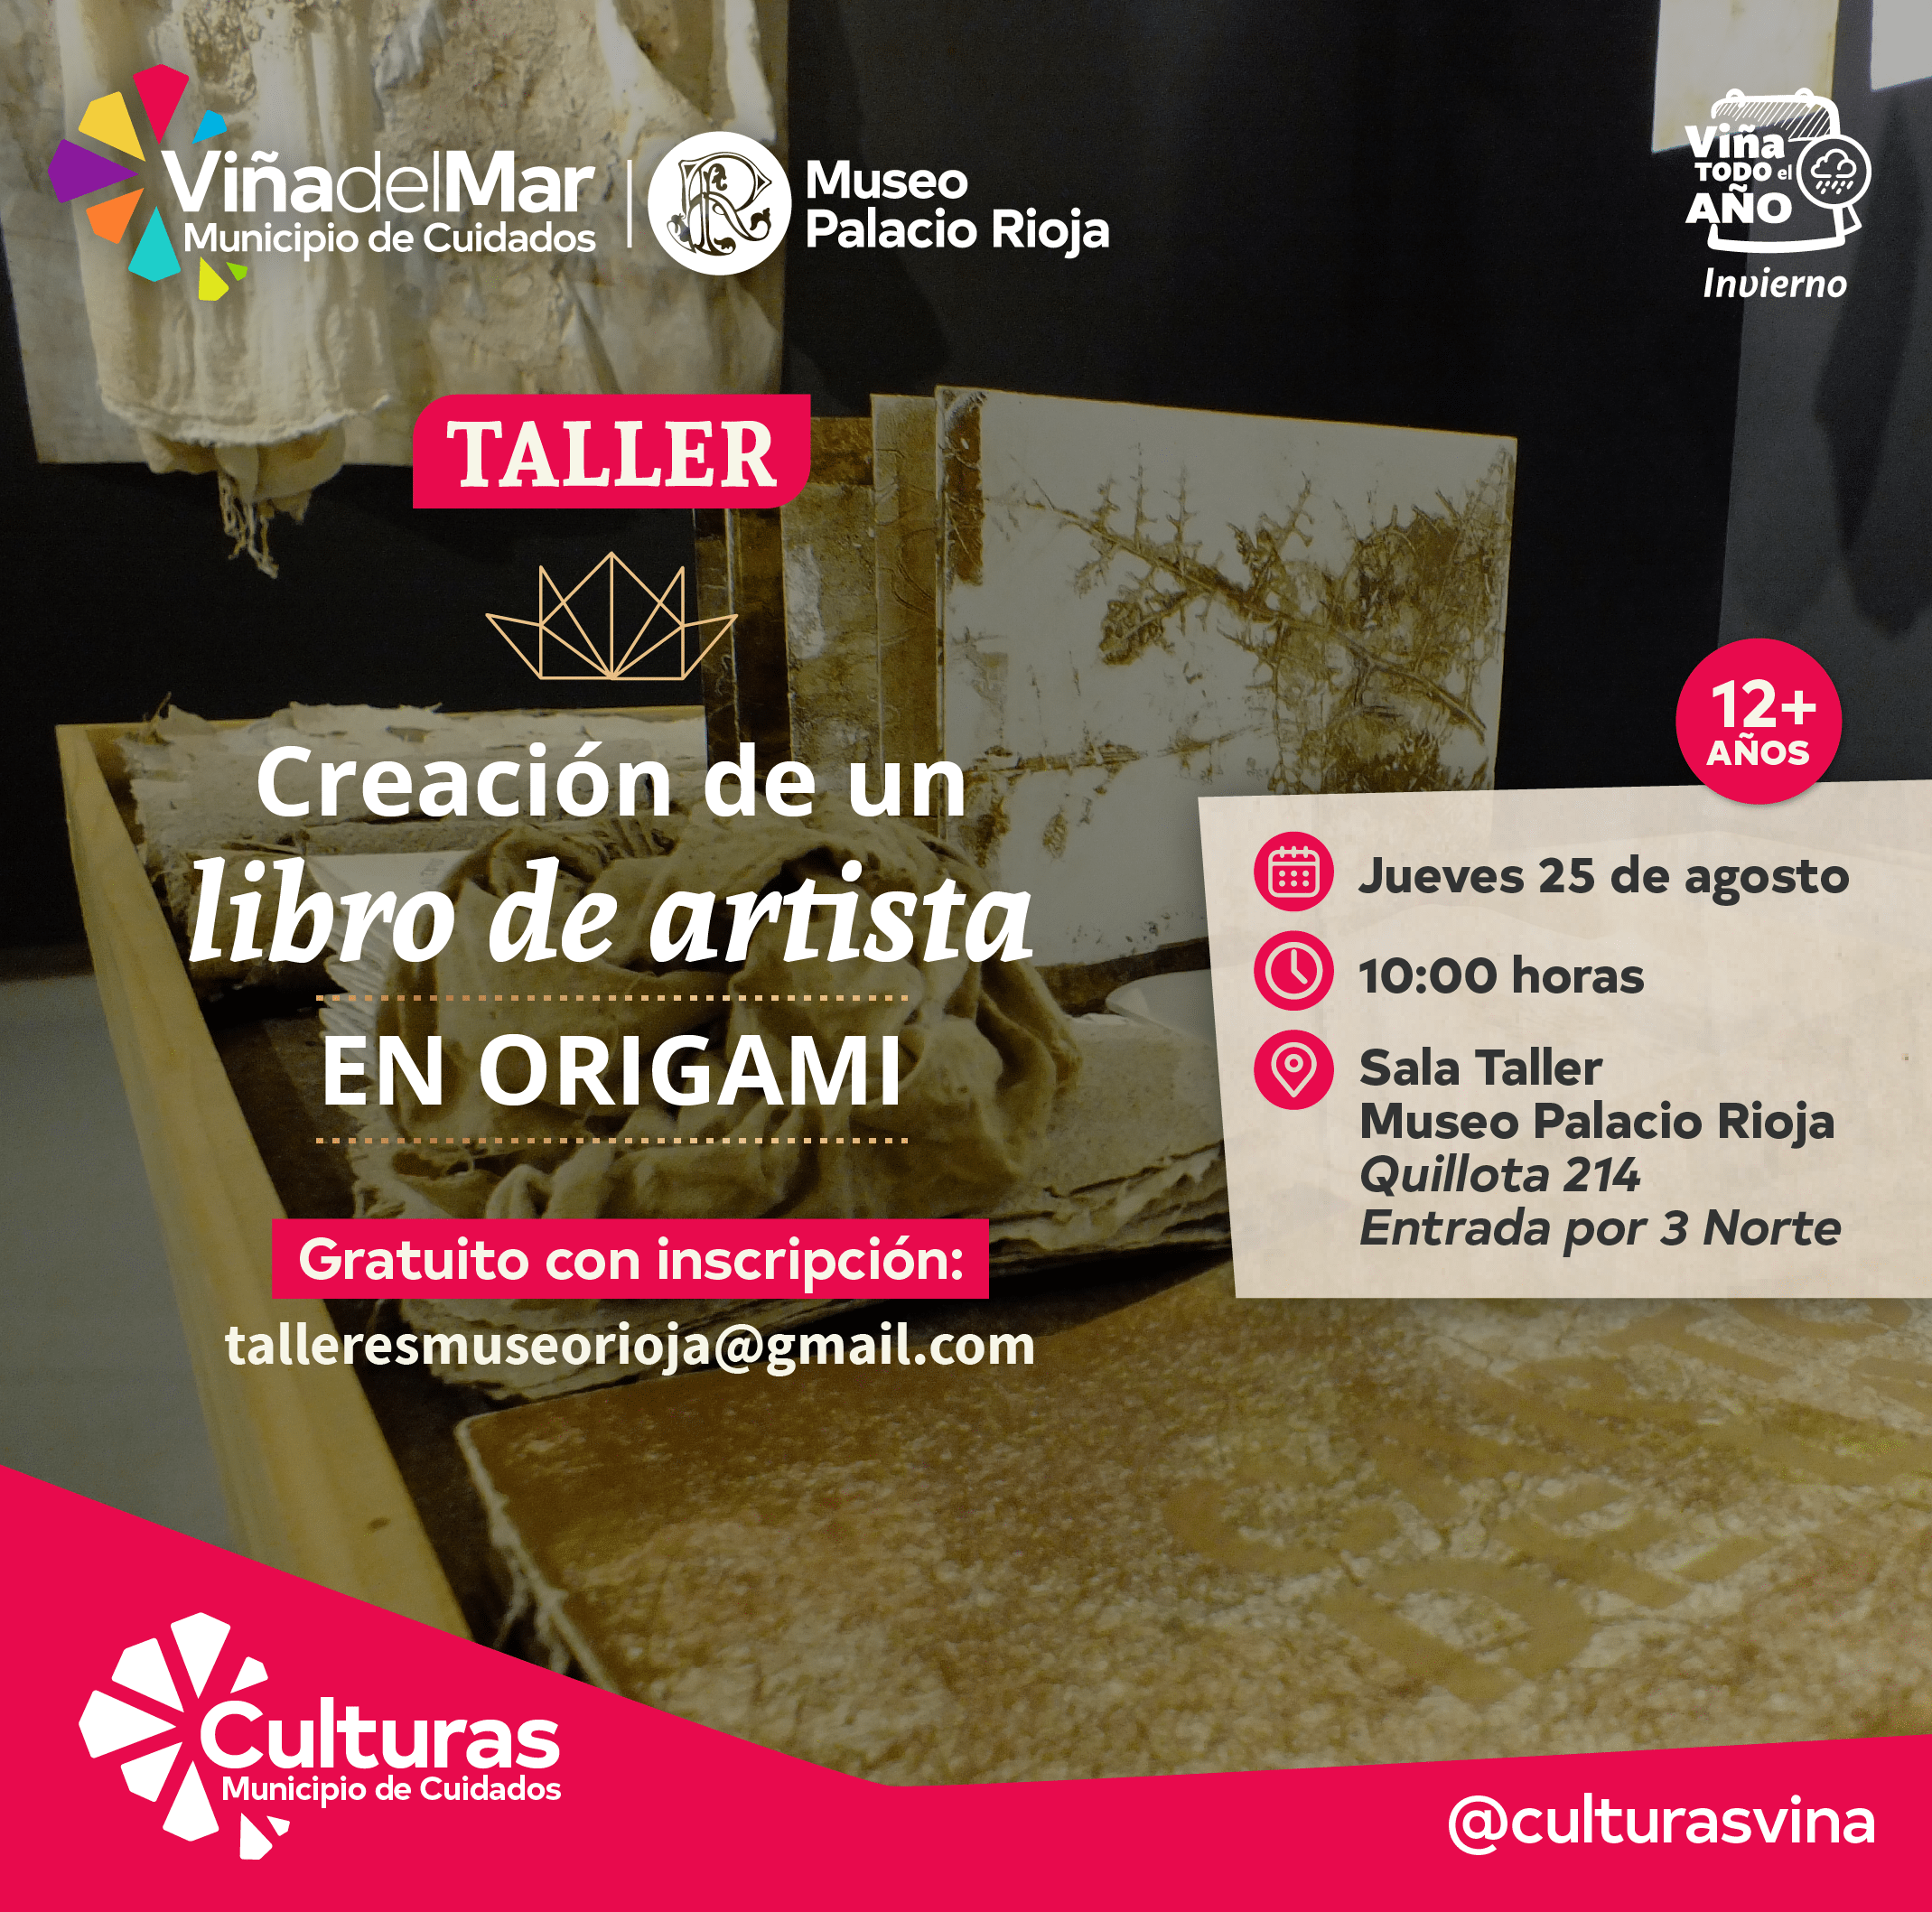 Museo Palacio Rioja ofrece taller para crear un “libro de artista” en origami